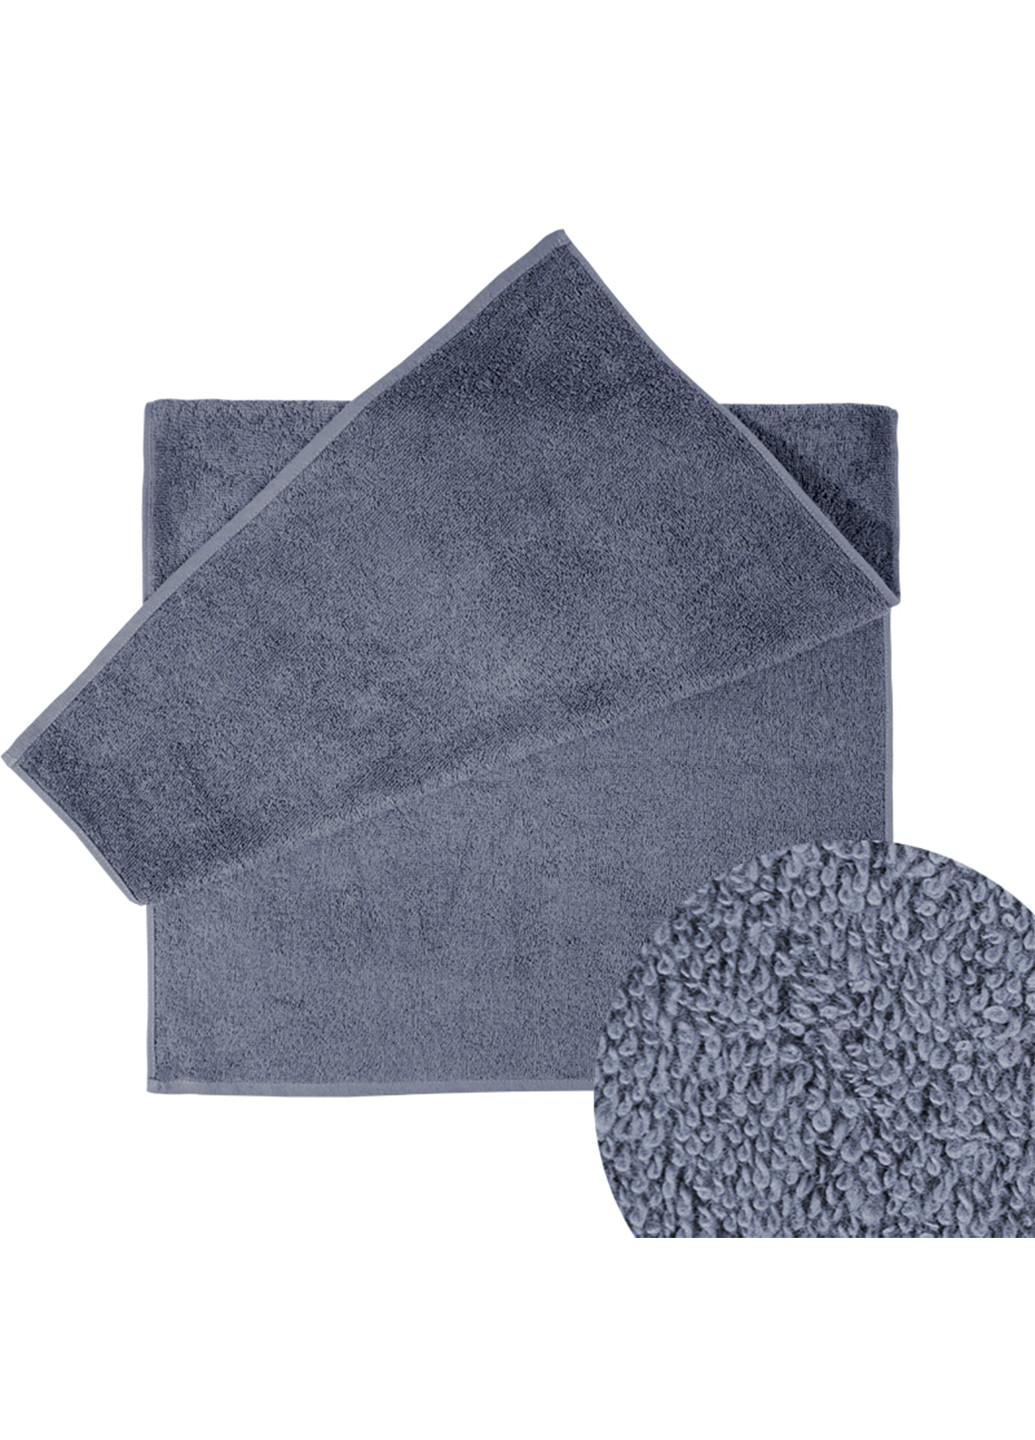 Ярослав полотенце яр-400 махровое 40х70 однотонный темно-серый производство - Украина